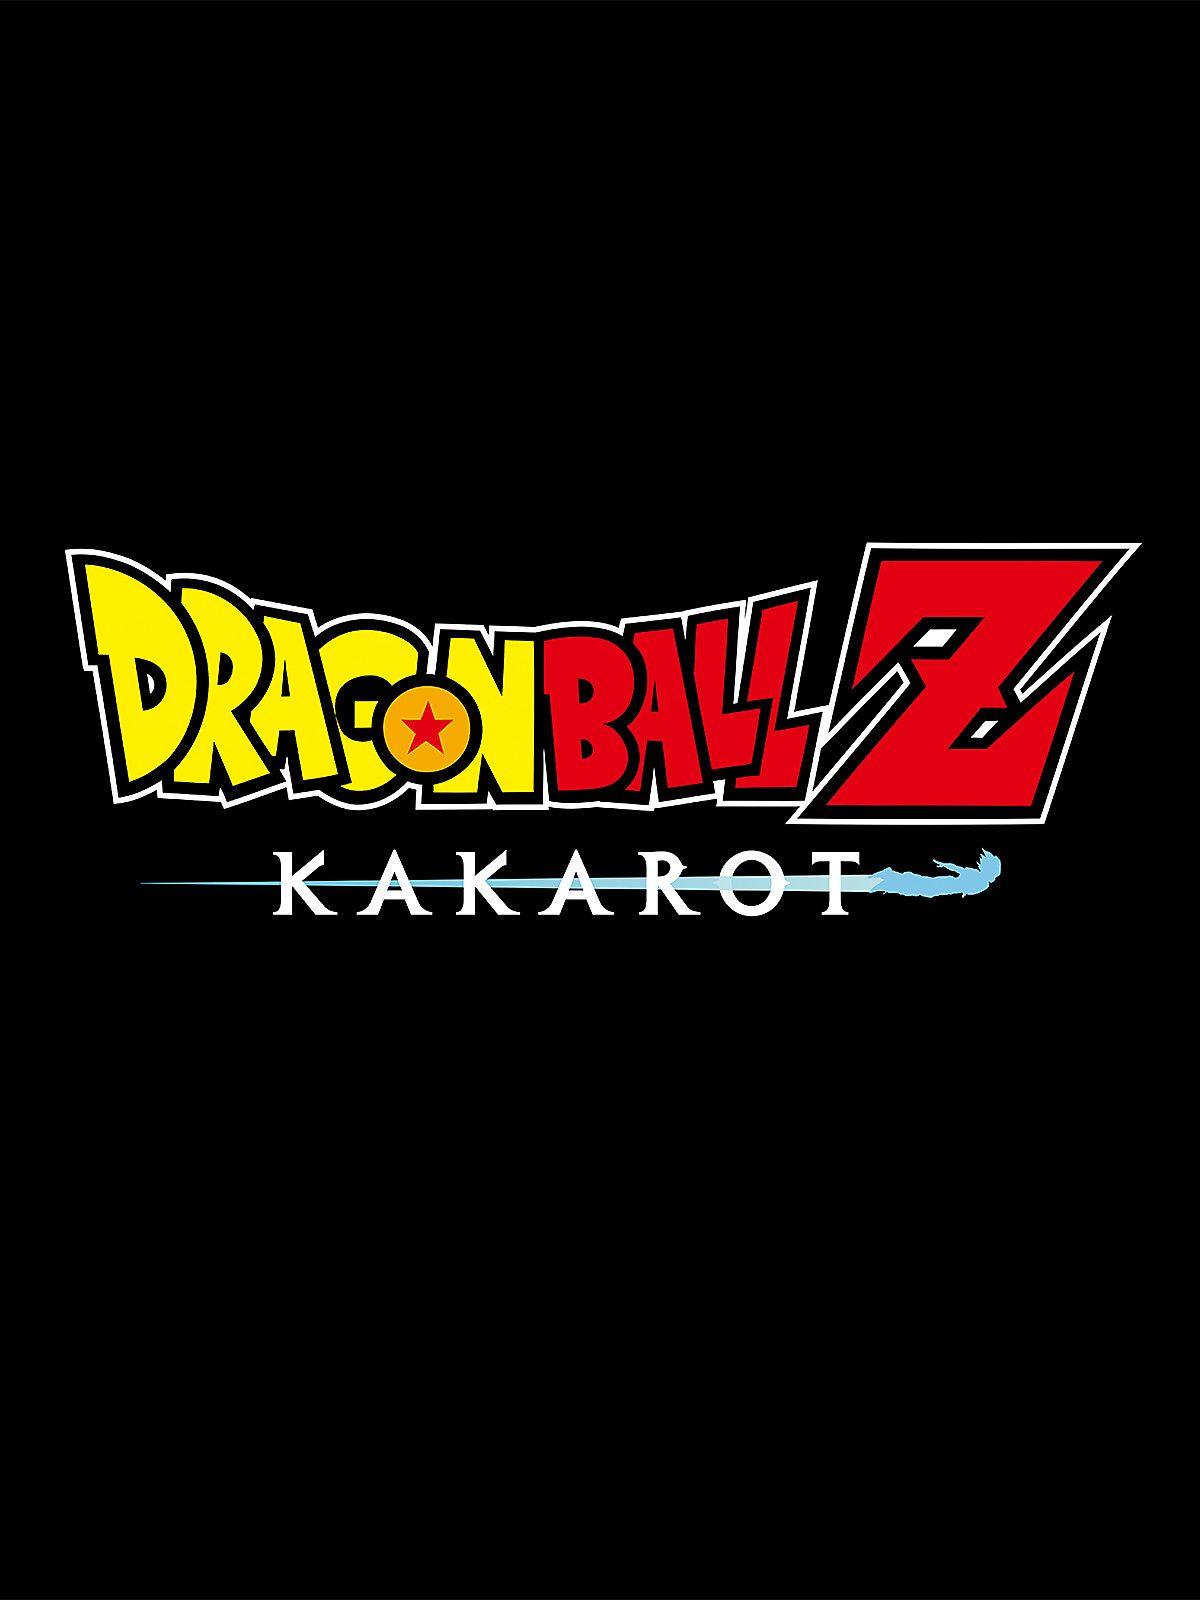 1200 x 1600 · jpeg - Dragon Ball Z Logo Wallpapers - Top Free Dragon Ball Z Logo Backgrounds ...